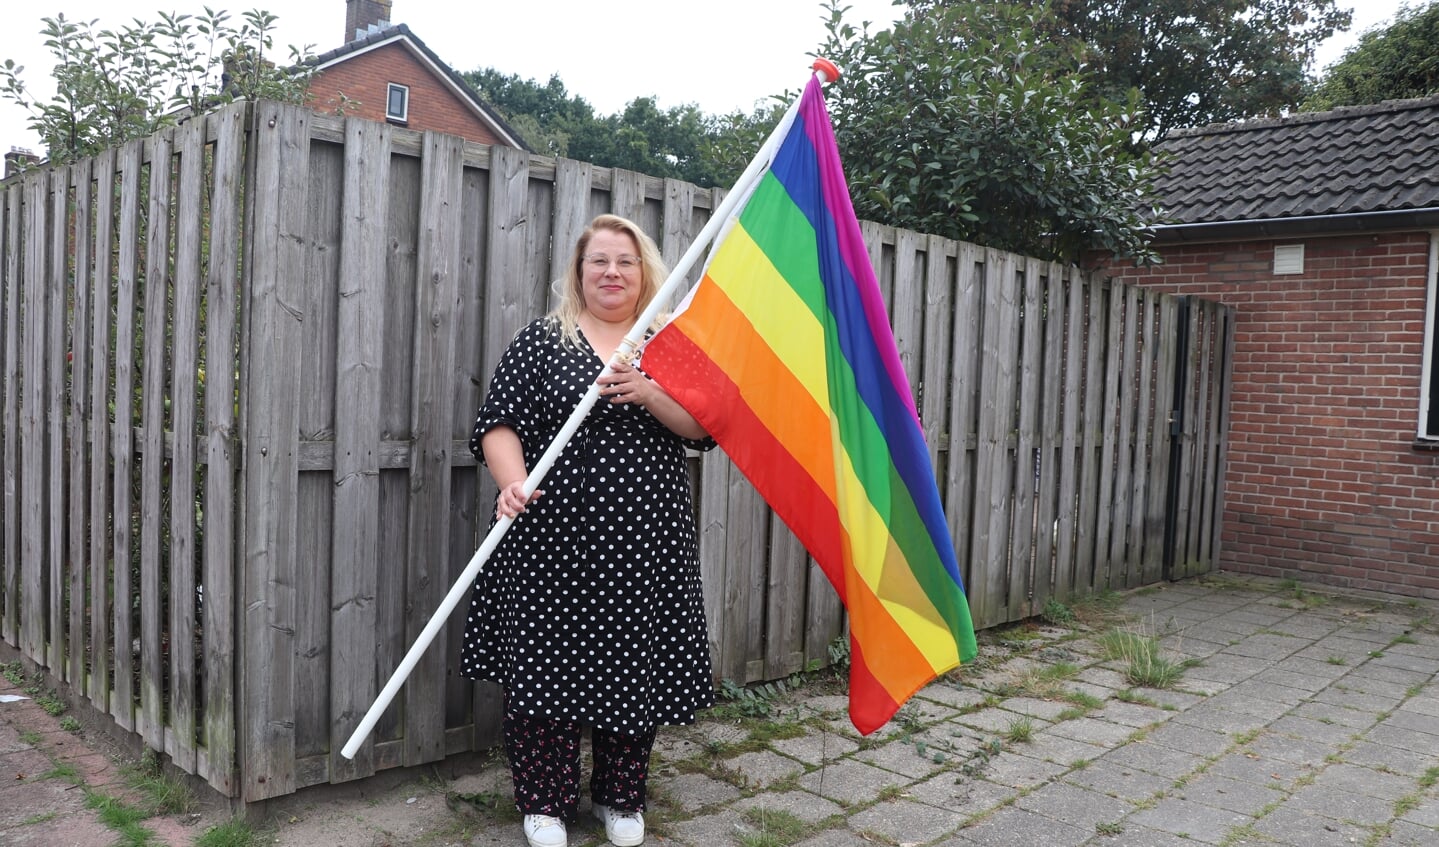 Christa Koekoek hing zoals ze gewend was op 11 oktober, internationale Coming Out Day, de regenboogvlag aan haar gevel. 